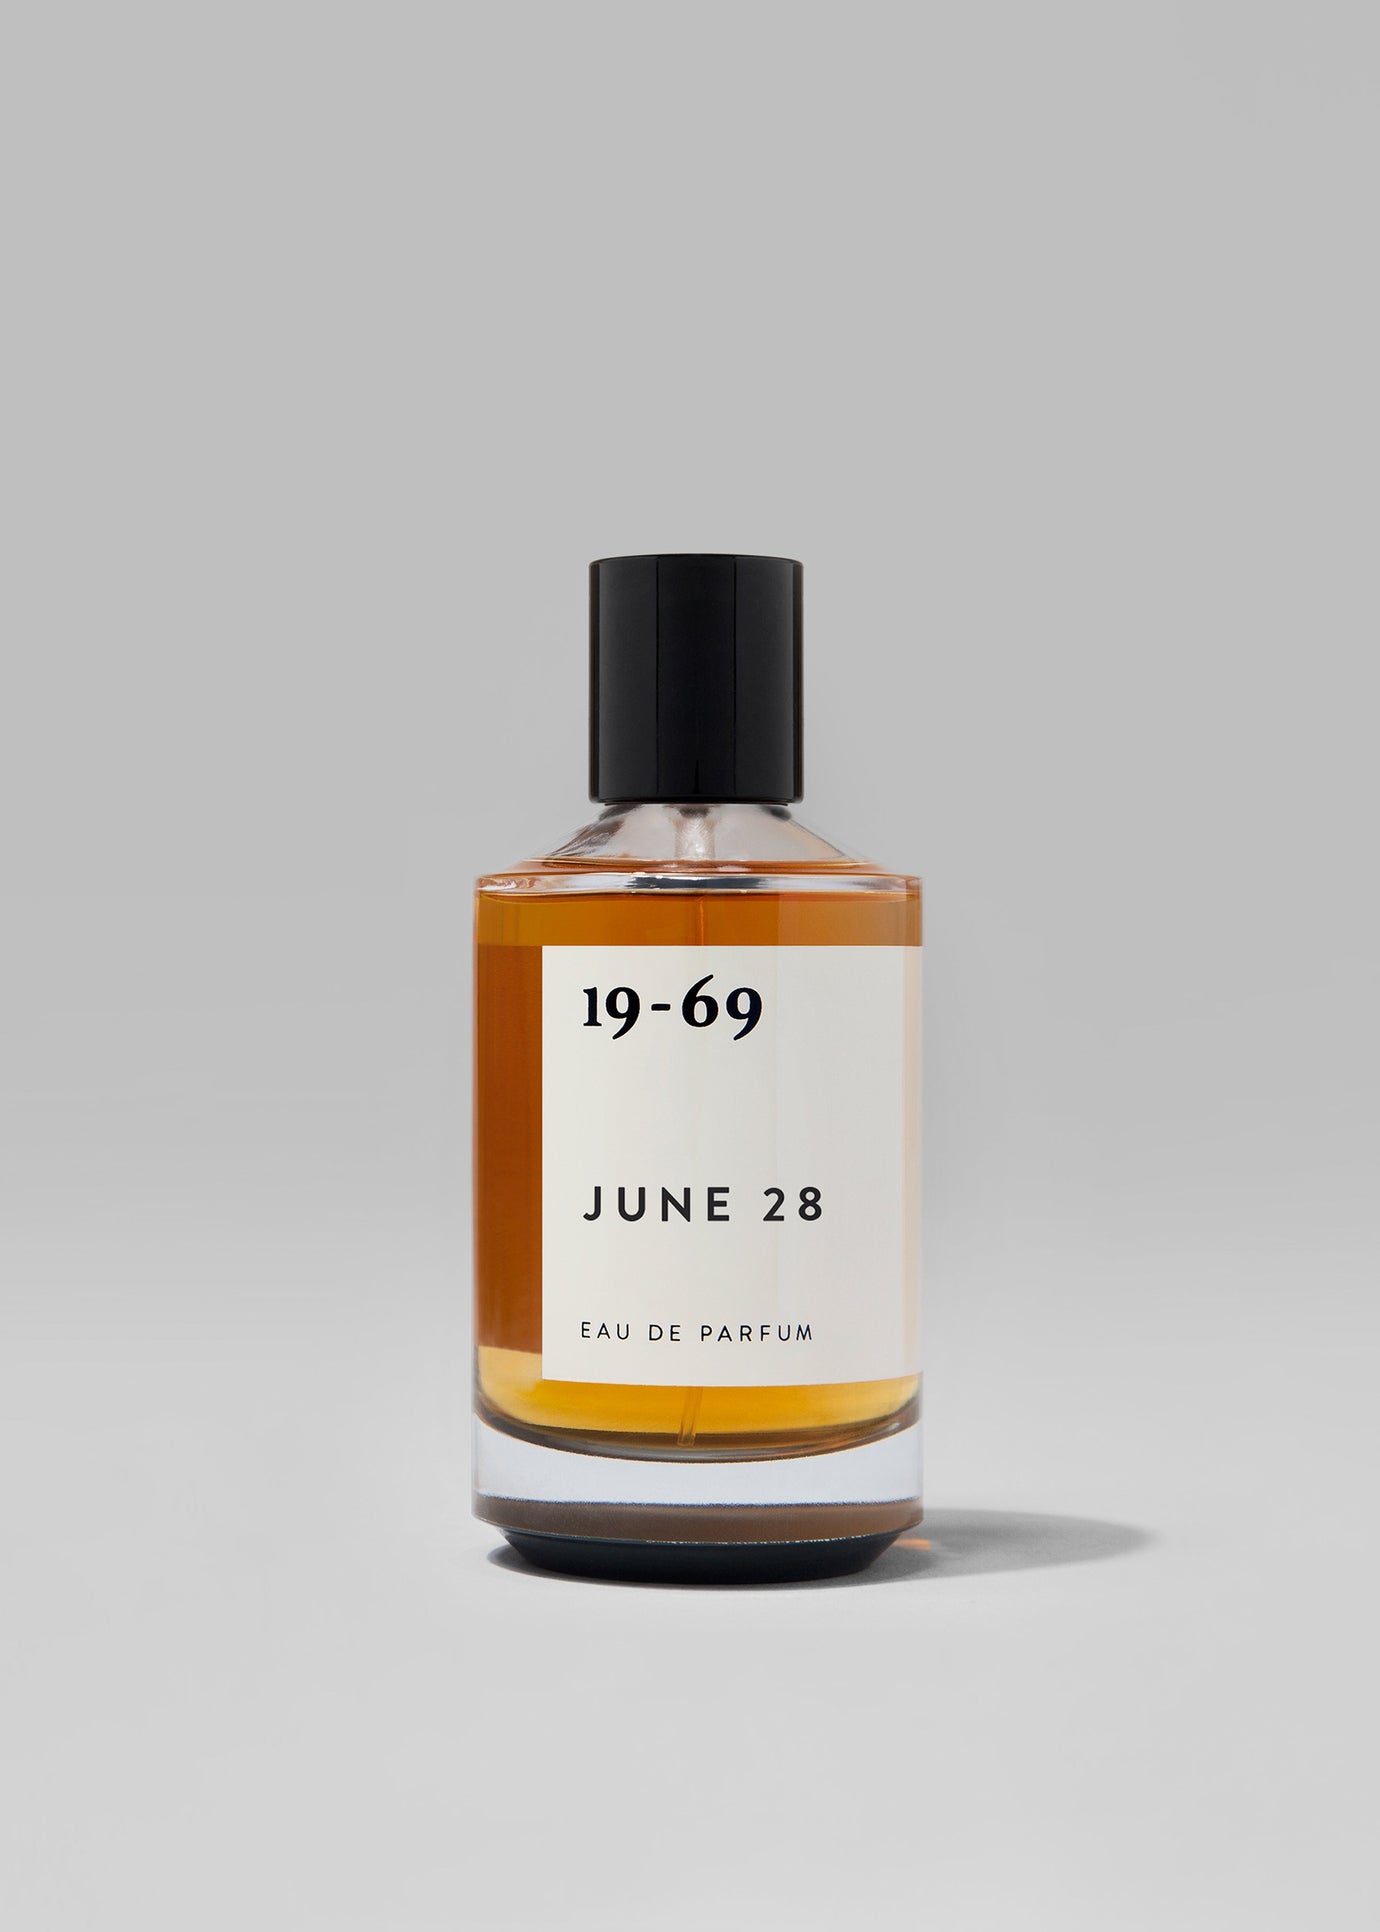 19-69 June 28 Eau De Parfum